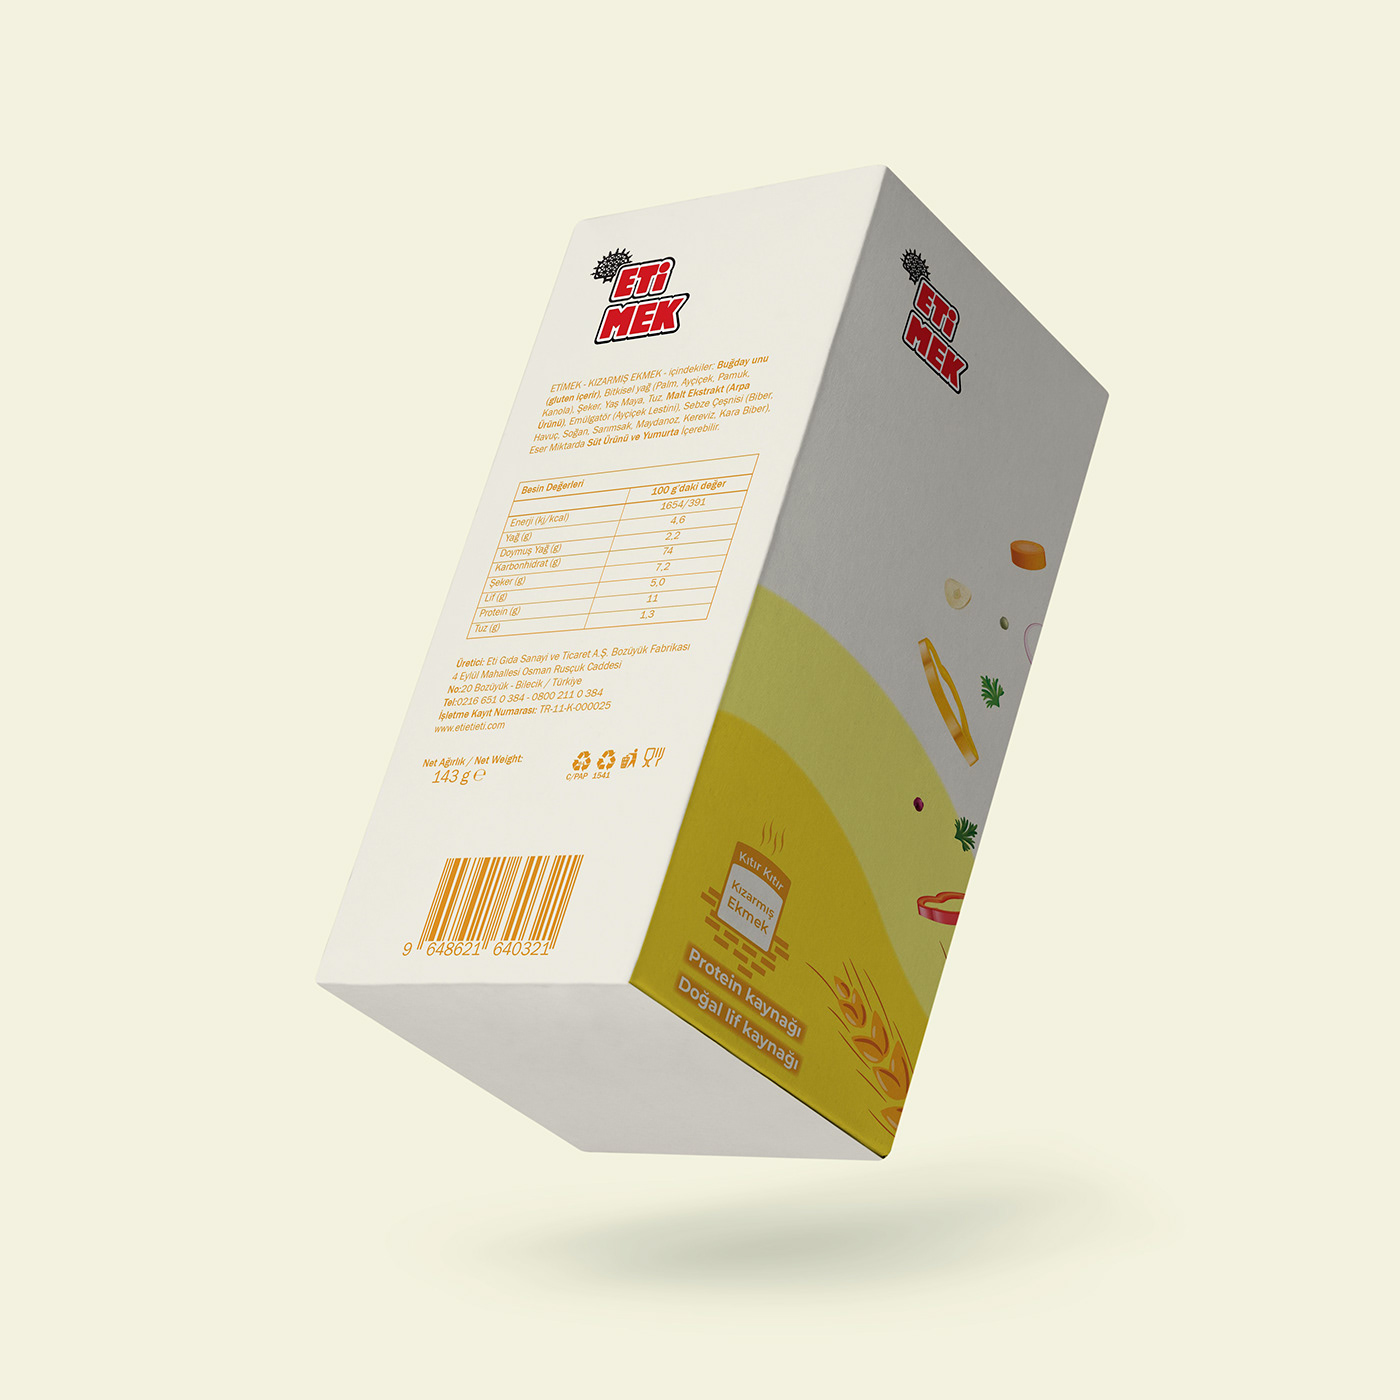 ambalaj tasarımı crusty bread eti eti mek graphic design  ILLUSTRATION  kızarmış ekmek packaging design